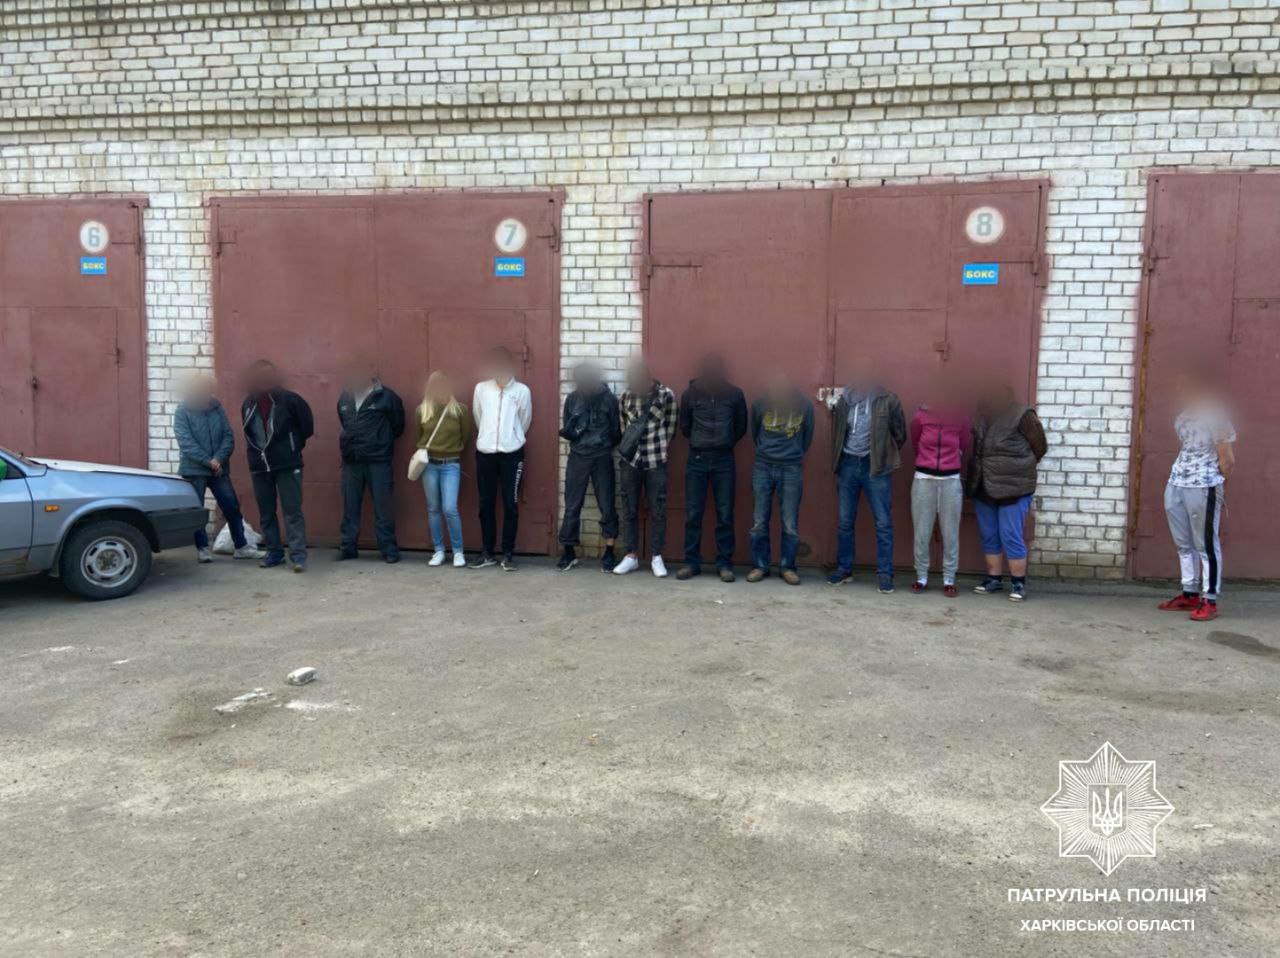 Криминал Харьков: Пойманы 14 мародеров, всей толпой обворовывавших магазин